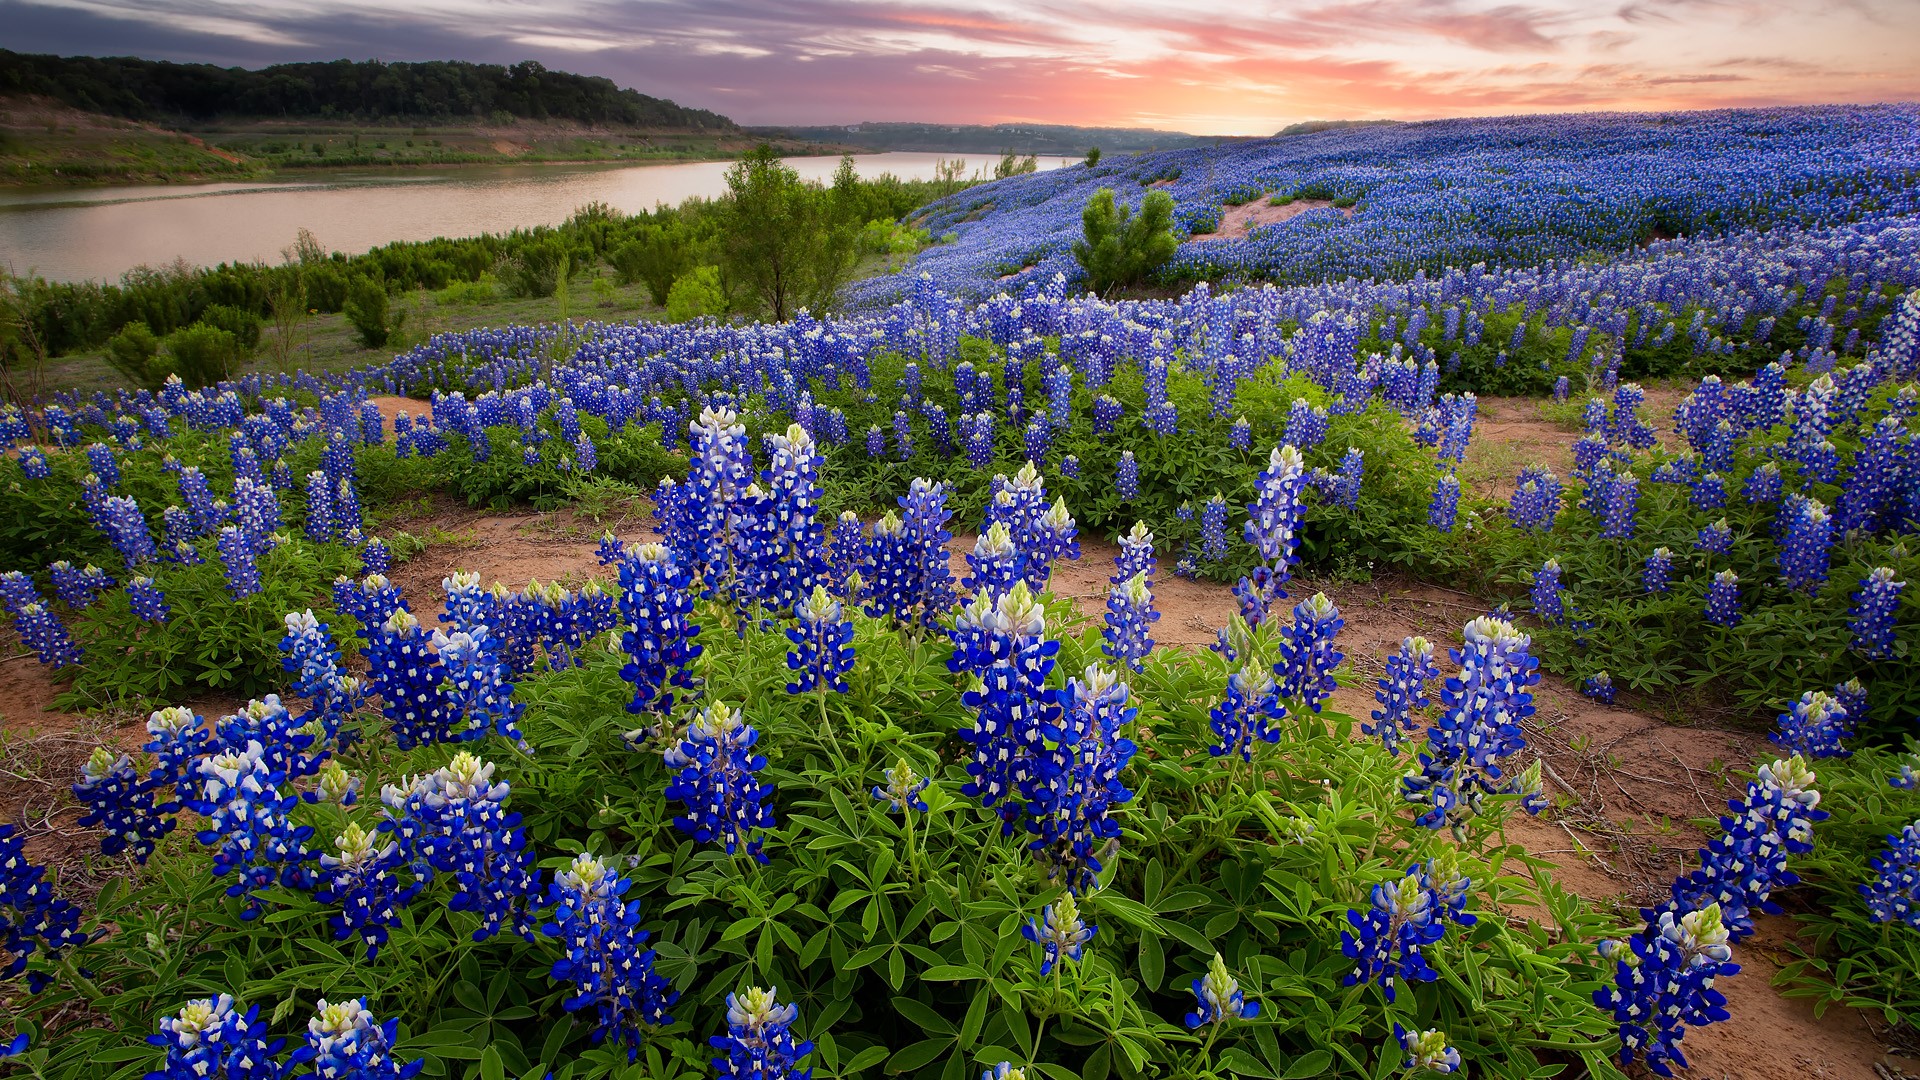 Nature Landscape Plants Flowers Trees Clouds Sunset River Texas Bluebonnet Flowers Texas USA 1920x1080